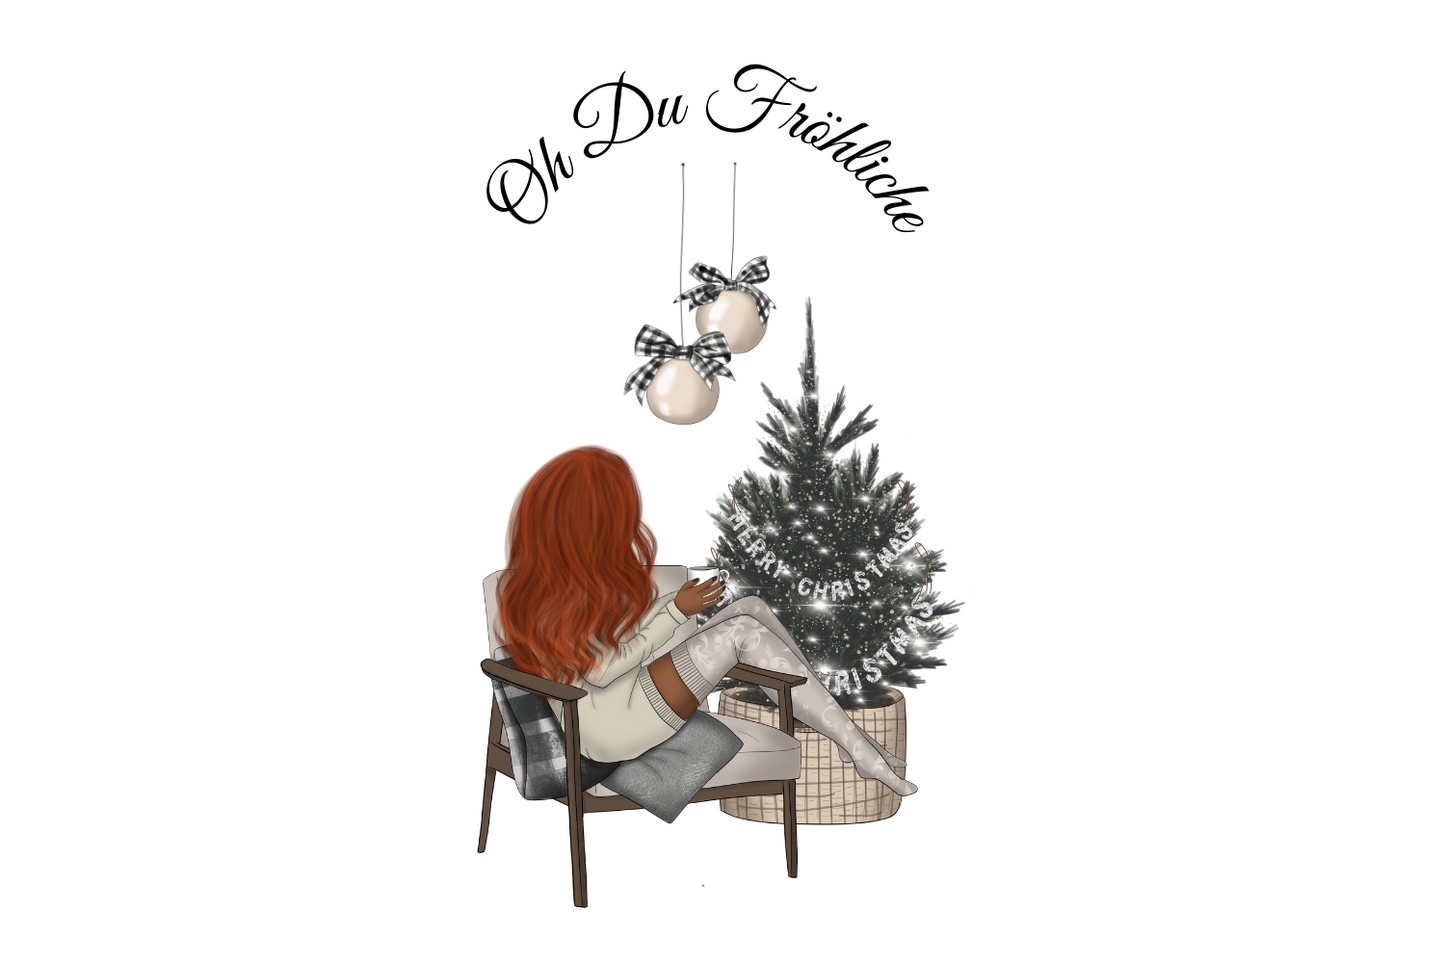 Oh Du Fröhliche - Frau am Weihnachtsbaum 2